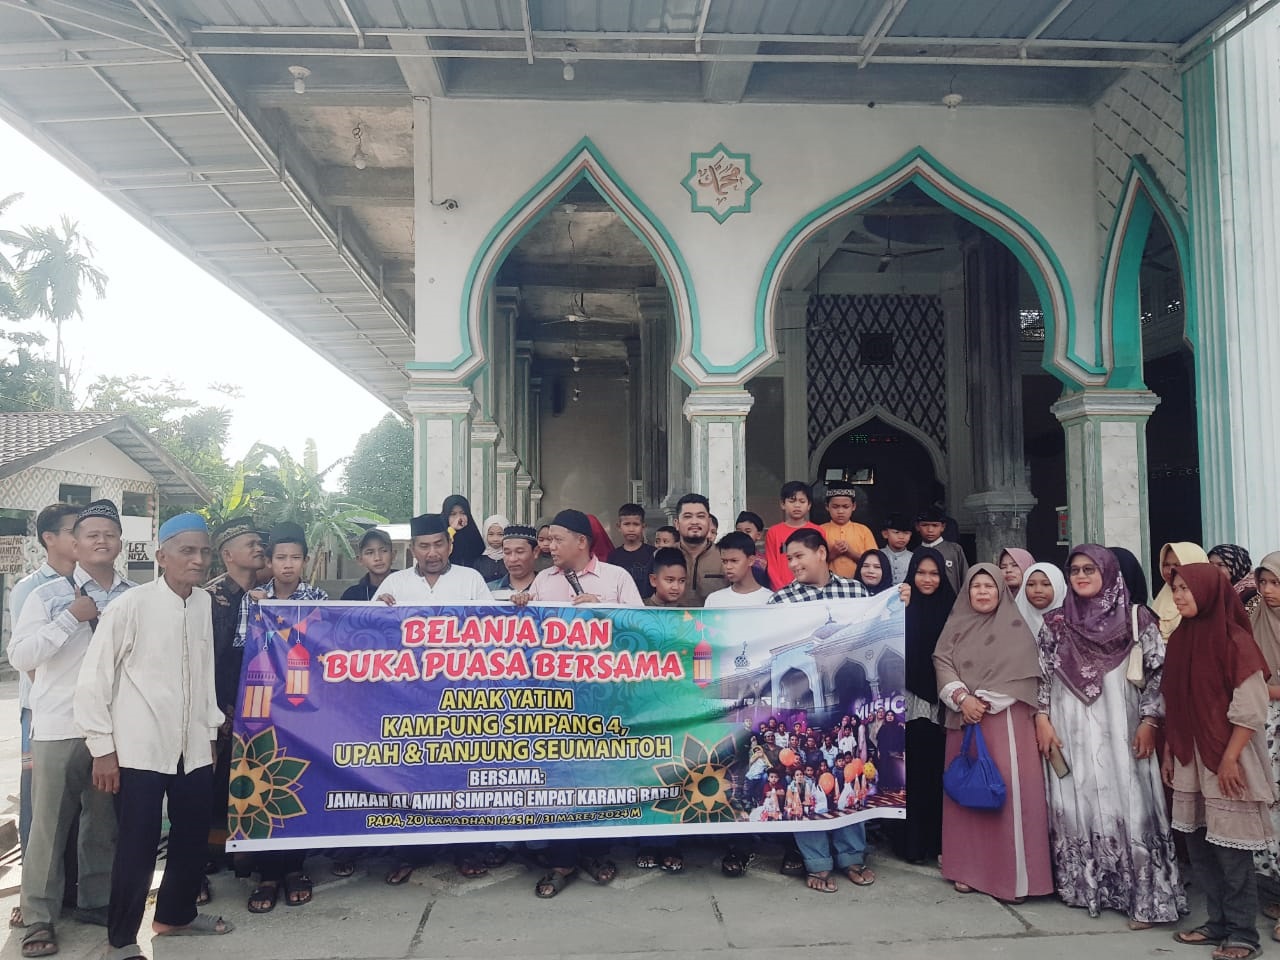 Pengurus jamaah Meunasah Al Amin,Simpang Empat, Kecamatan Karang Baru,Aceh Tamiang saat foto bersama dengan 36 anak yatim sebelum berlangsungnya kegiatan belanja dan buka puasa bersama pada Minggu (31/3) sore.(Waspada/Yusri).